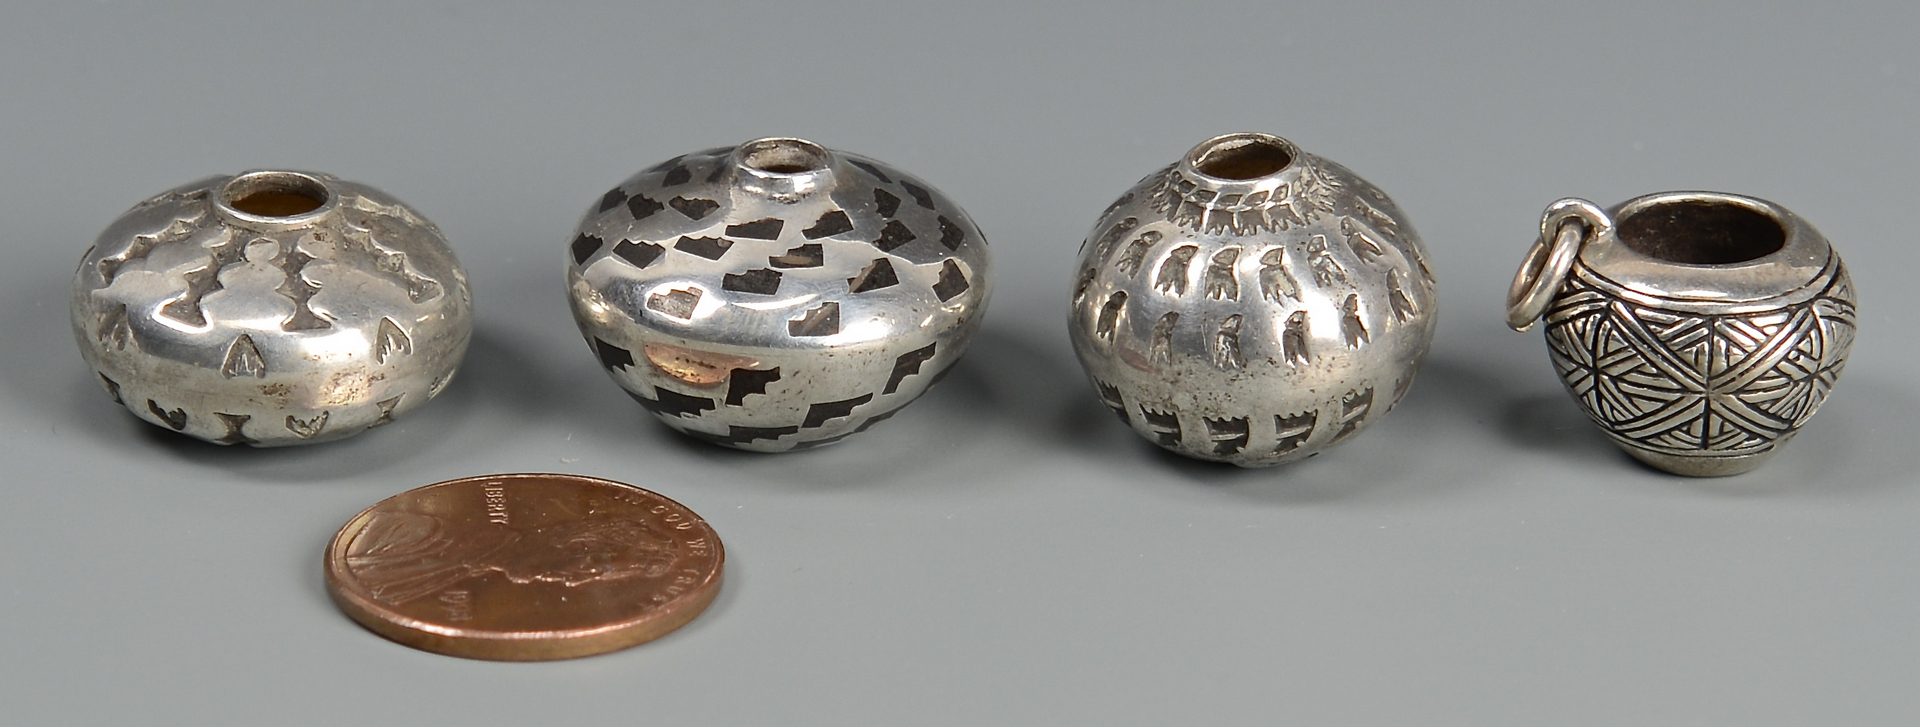 Lot 450: 4 Miniature Navajo Silver Jars